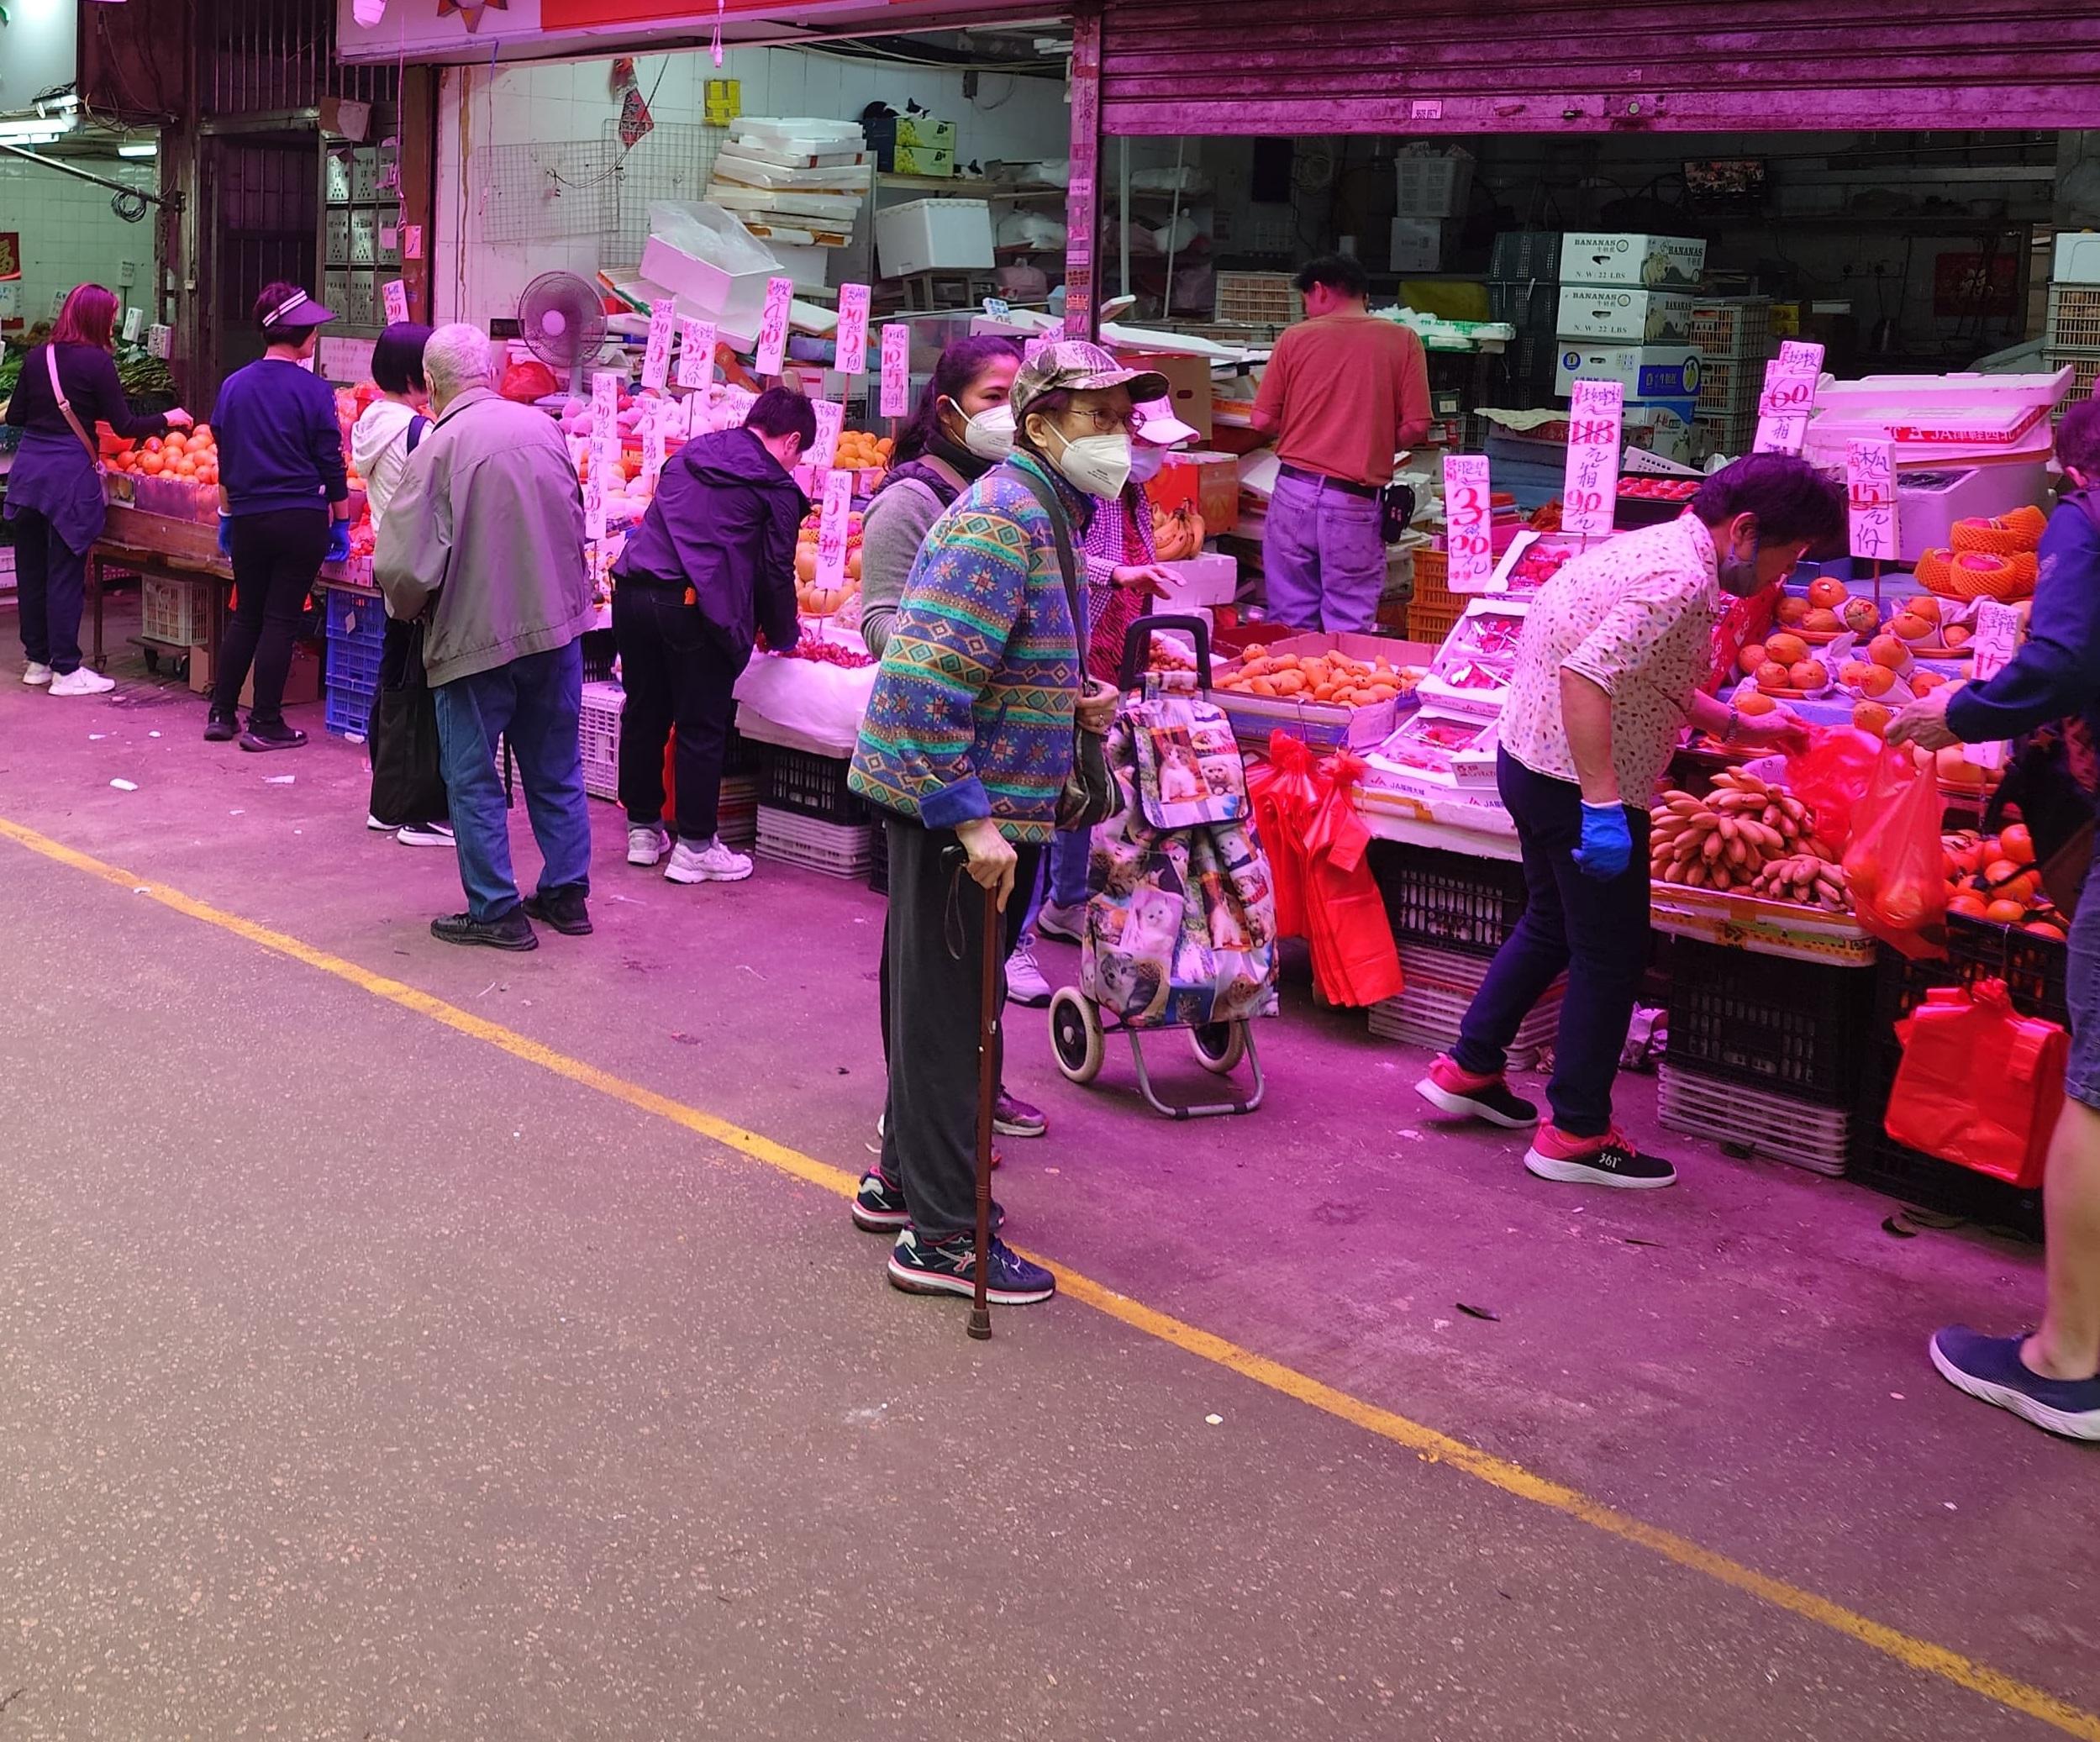 食物环境卫生署与香港警务处今日（二月二十九日）于黄大仙牛池湾村采取联合行动，打击该处已持续多年的严重店铺阻街问题。图示一间店铺于行动后的情况。